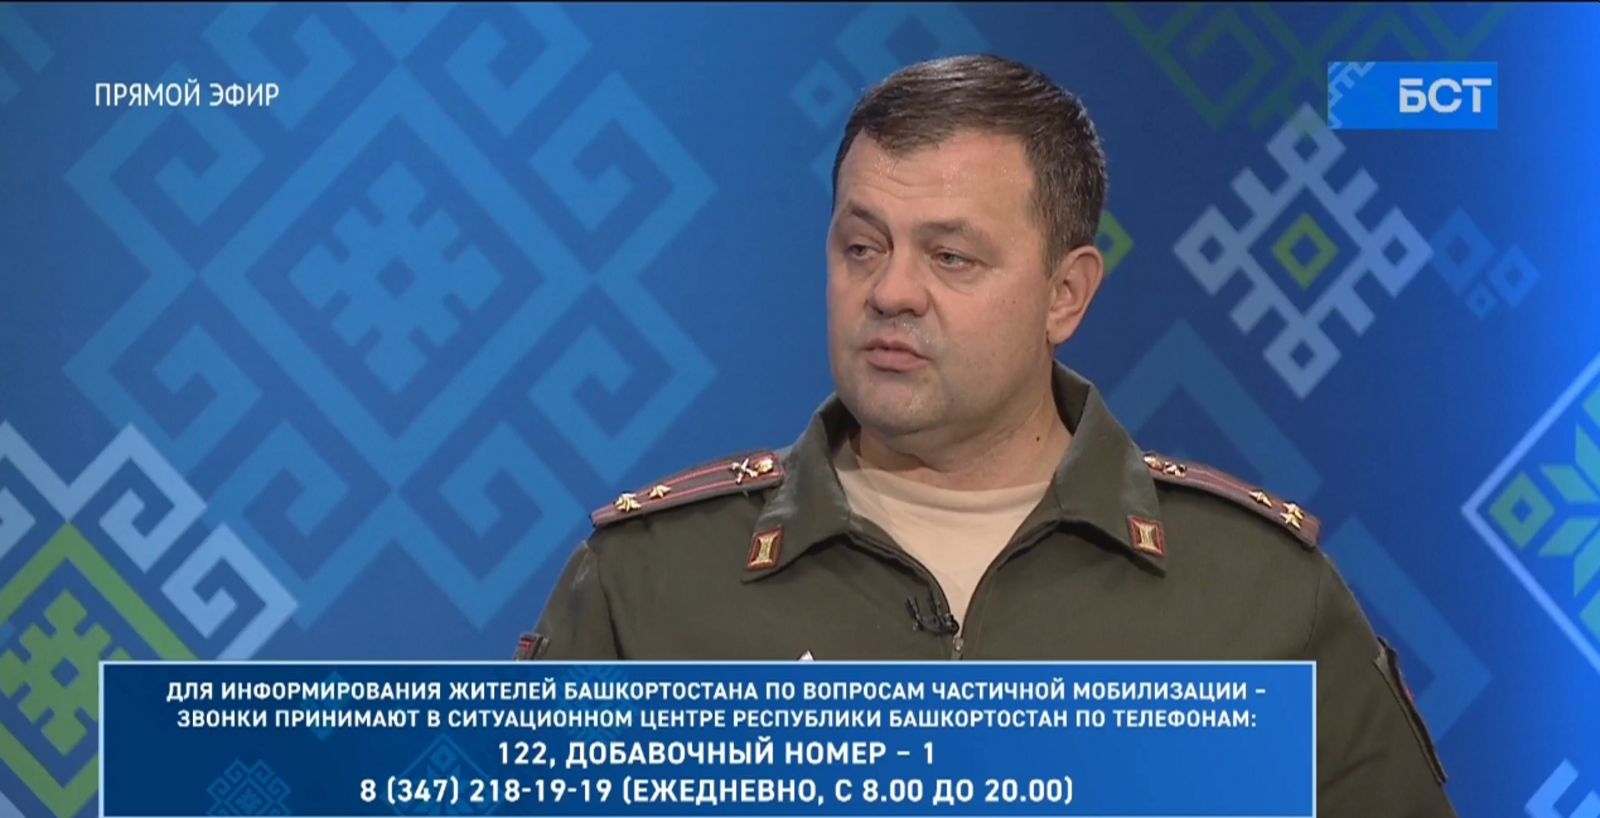 Военный комиссар Башкирии ответил на актуальные вопросы, касающиеся частичной мобилизации